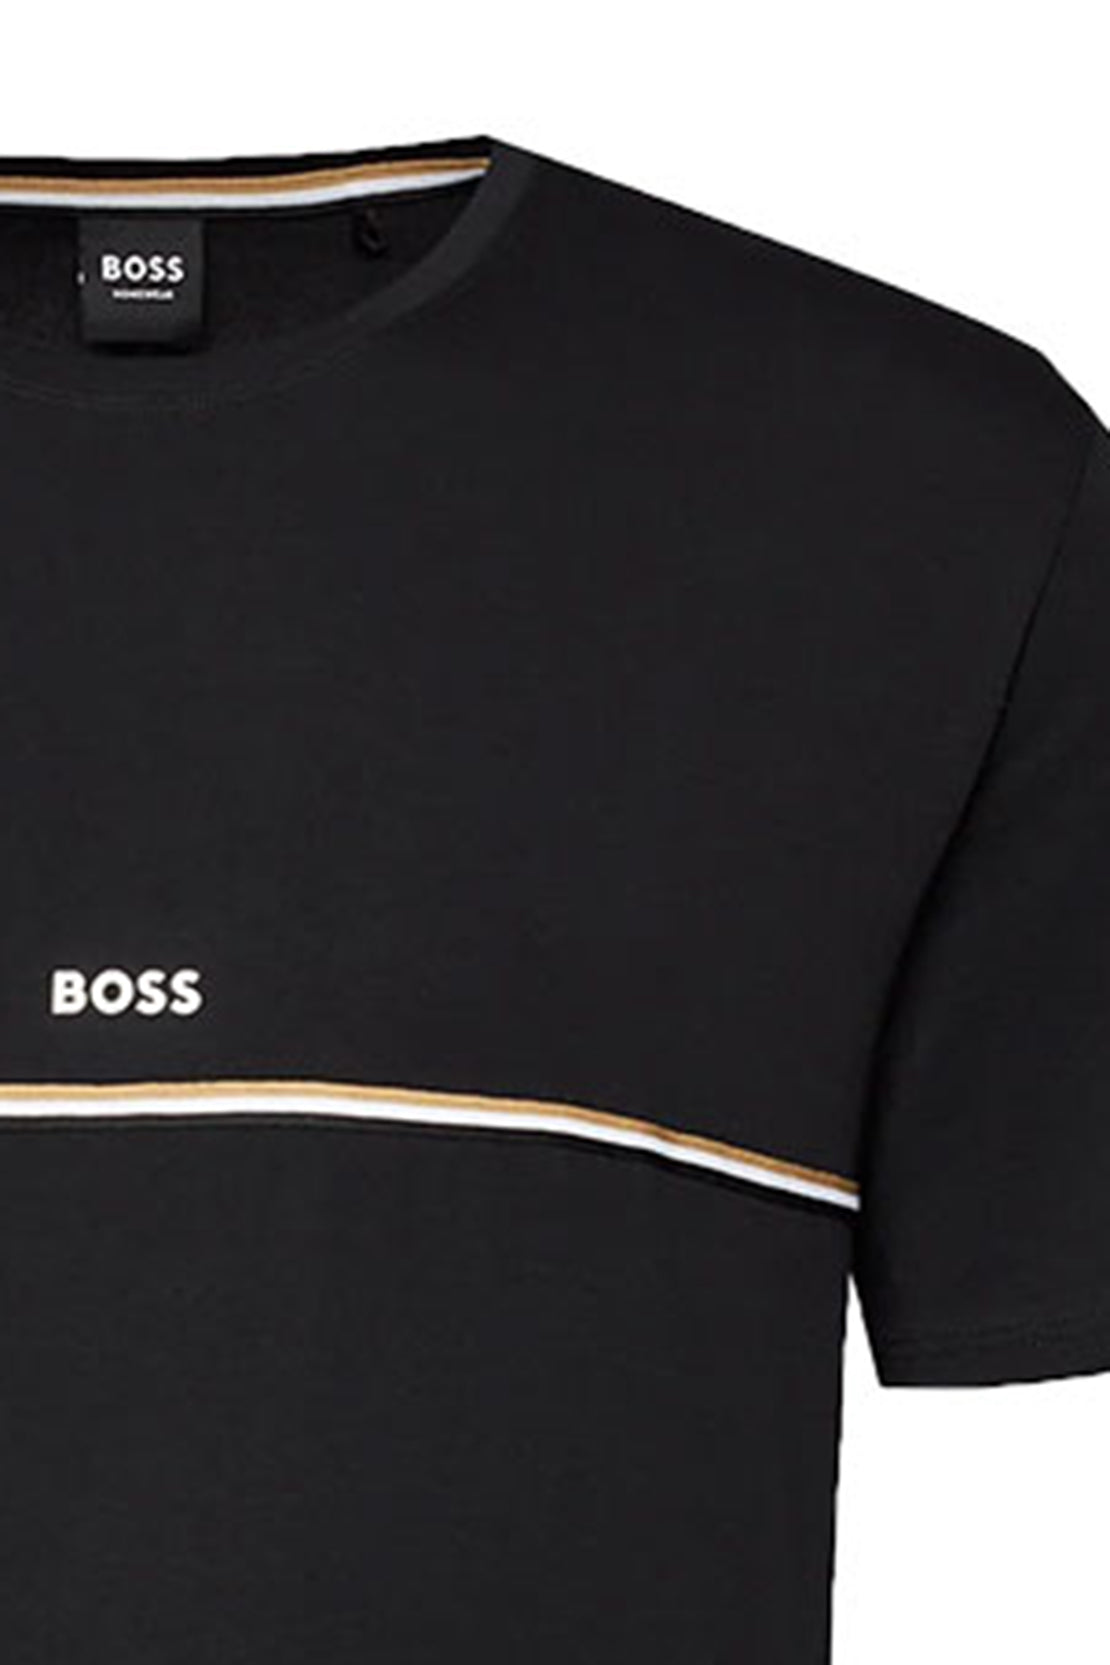 BOSS - UNIQUE Black Stretch Cotton Pyjama T-Shirt 50515395 001